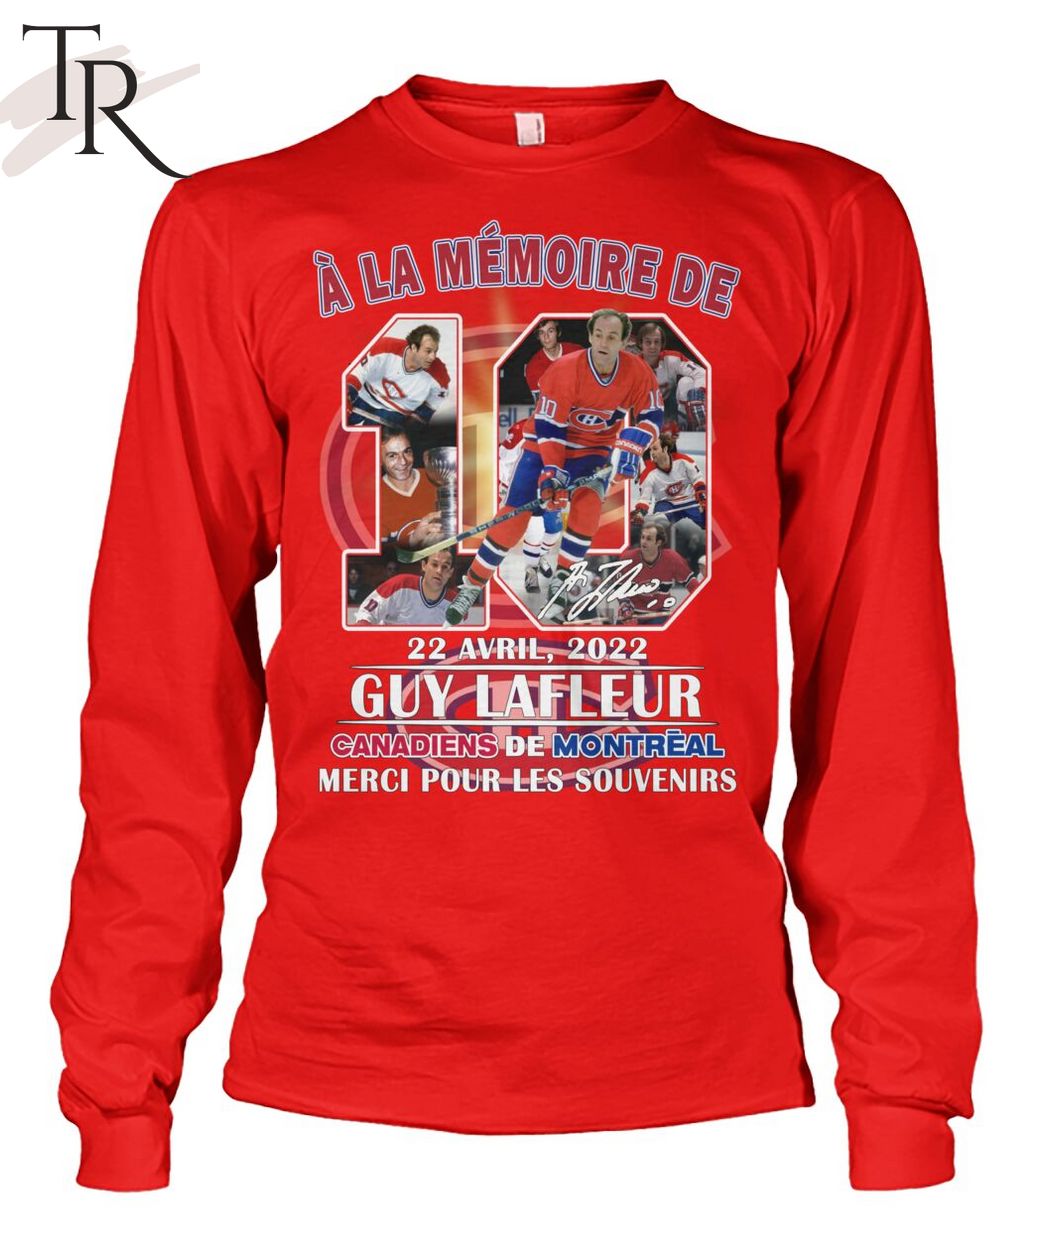 A La Memoire De 22 Avril, 2022 Guy Lafleur Canadiens De Montreal Merci Pour Les Souvenirs T-Shirt